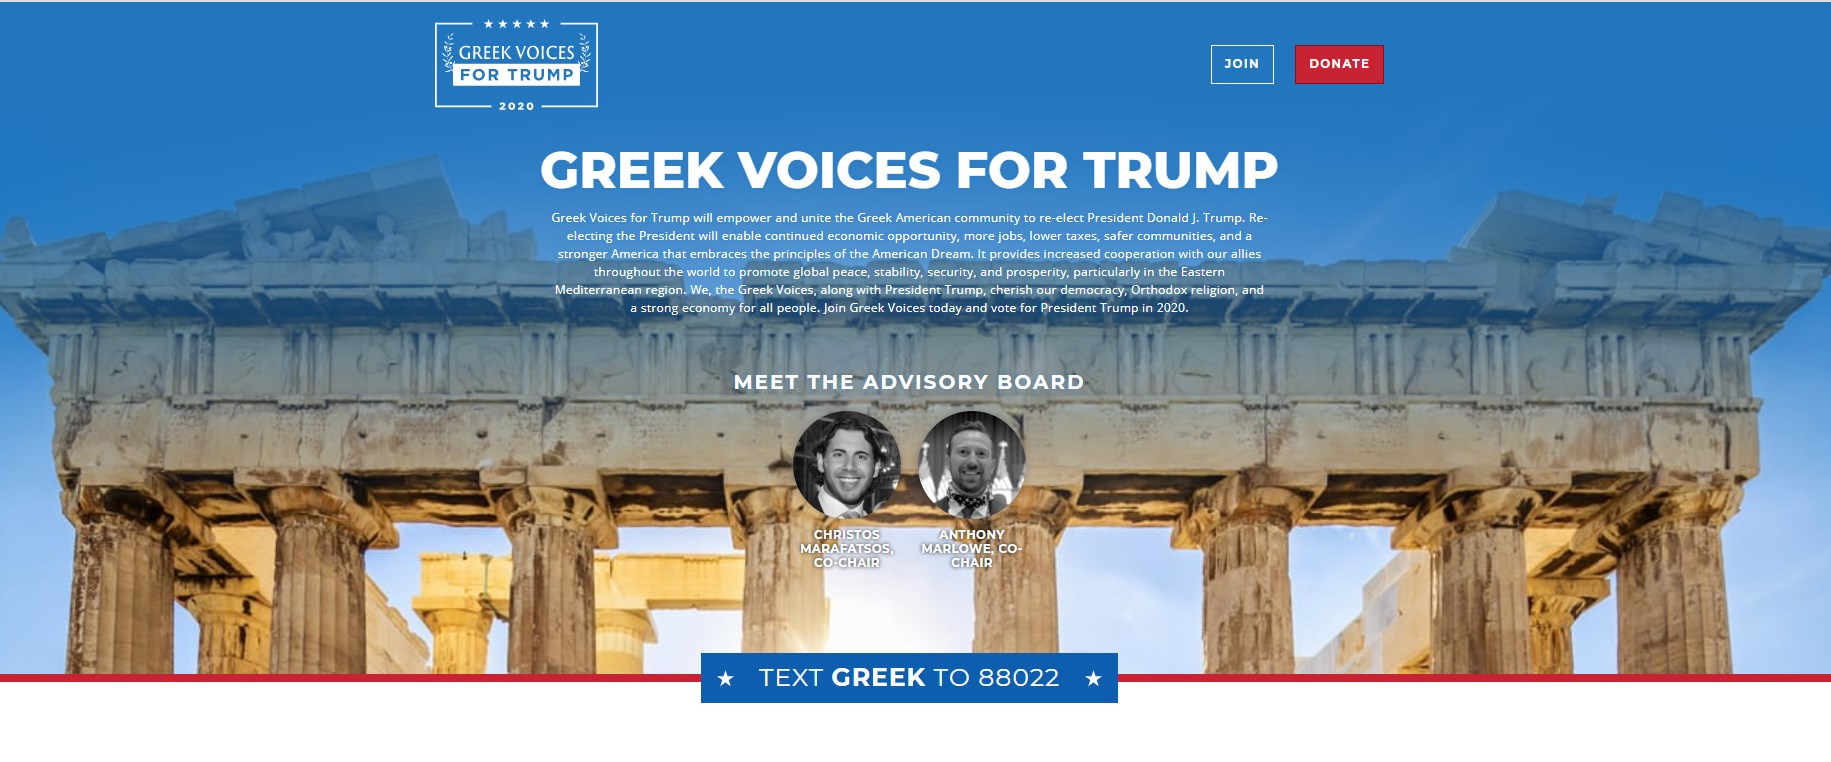 Το Ελληνικό επιτελείο του Τραμπ αναλύει γιατί οι ομογενείς πρέπει να ψηφίσουν Τραμπ!